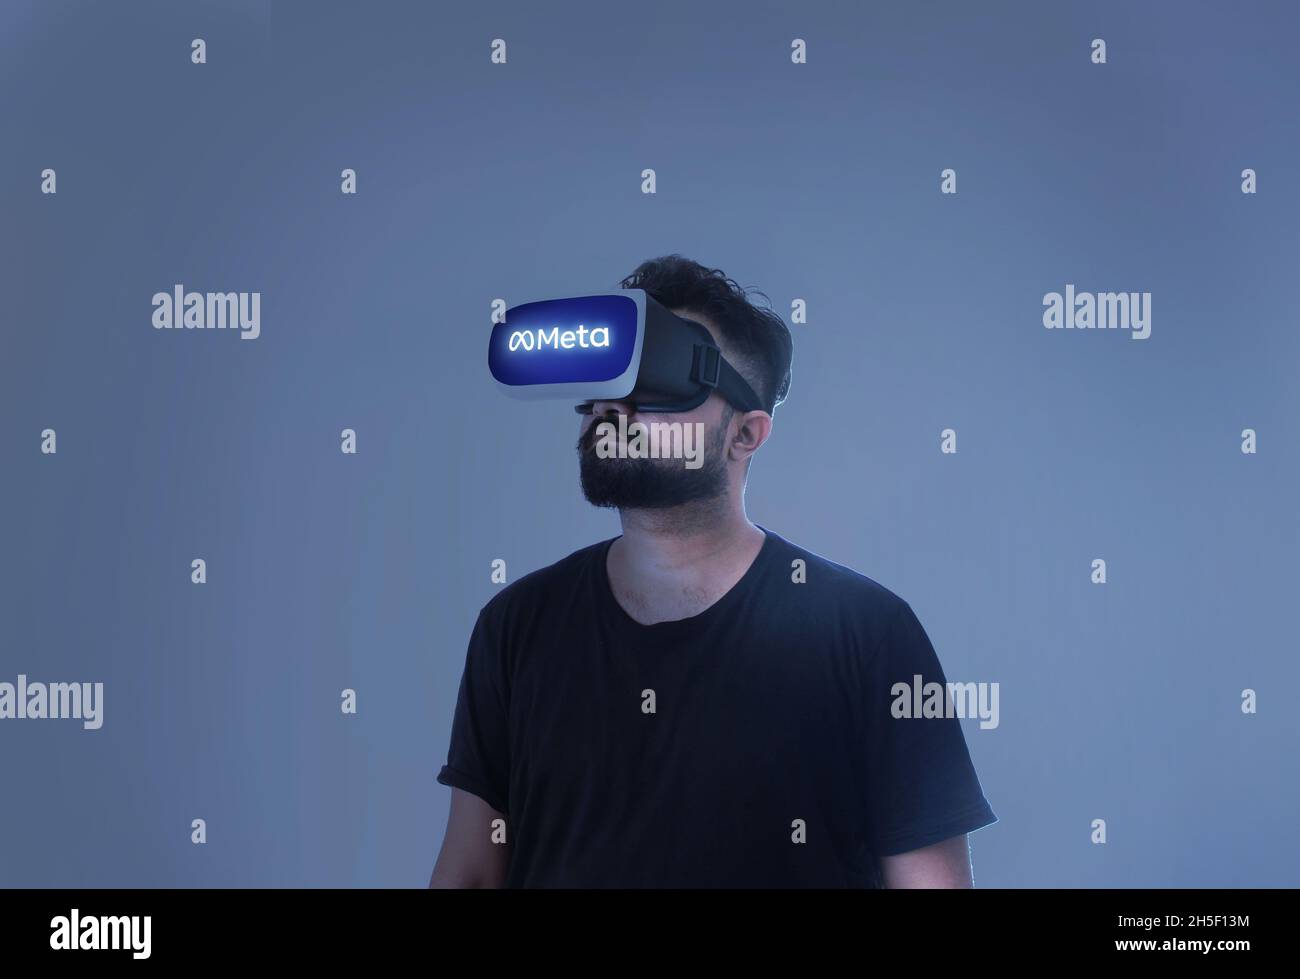 Guy portant des lunettes de réalité virtuelle à l'intérieur D'Un métaverse - Meta écrit sur le Google Banque D'Images